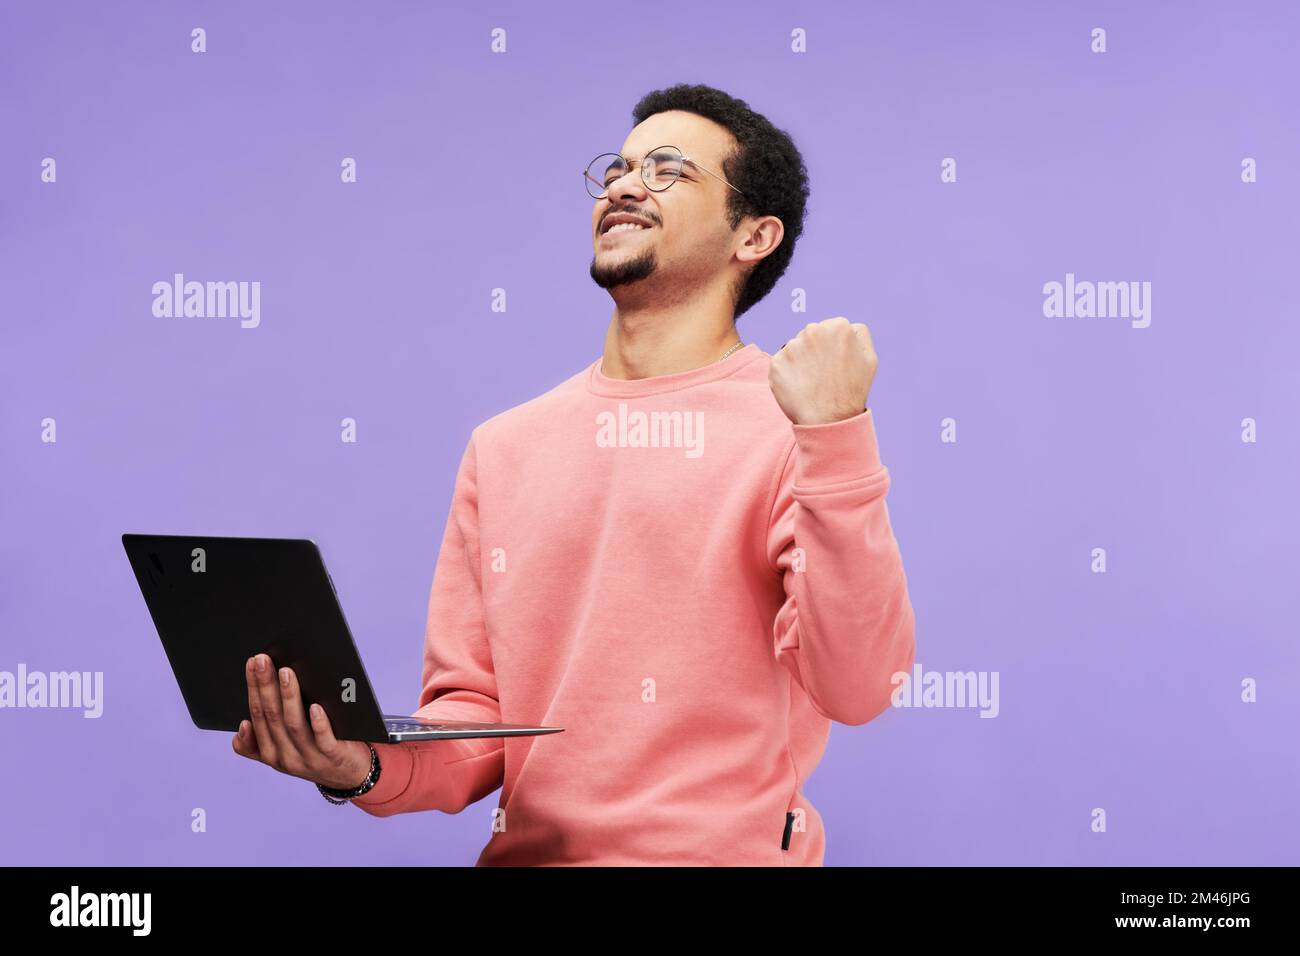 Hombre extático en ropa casual rosa que mantiene los ojos cerrados mientras sostiene la computadora portátil y expresa la emoción contra el fondo violeta en aislamiento Foto de stock